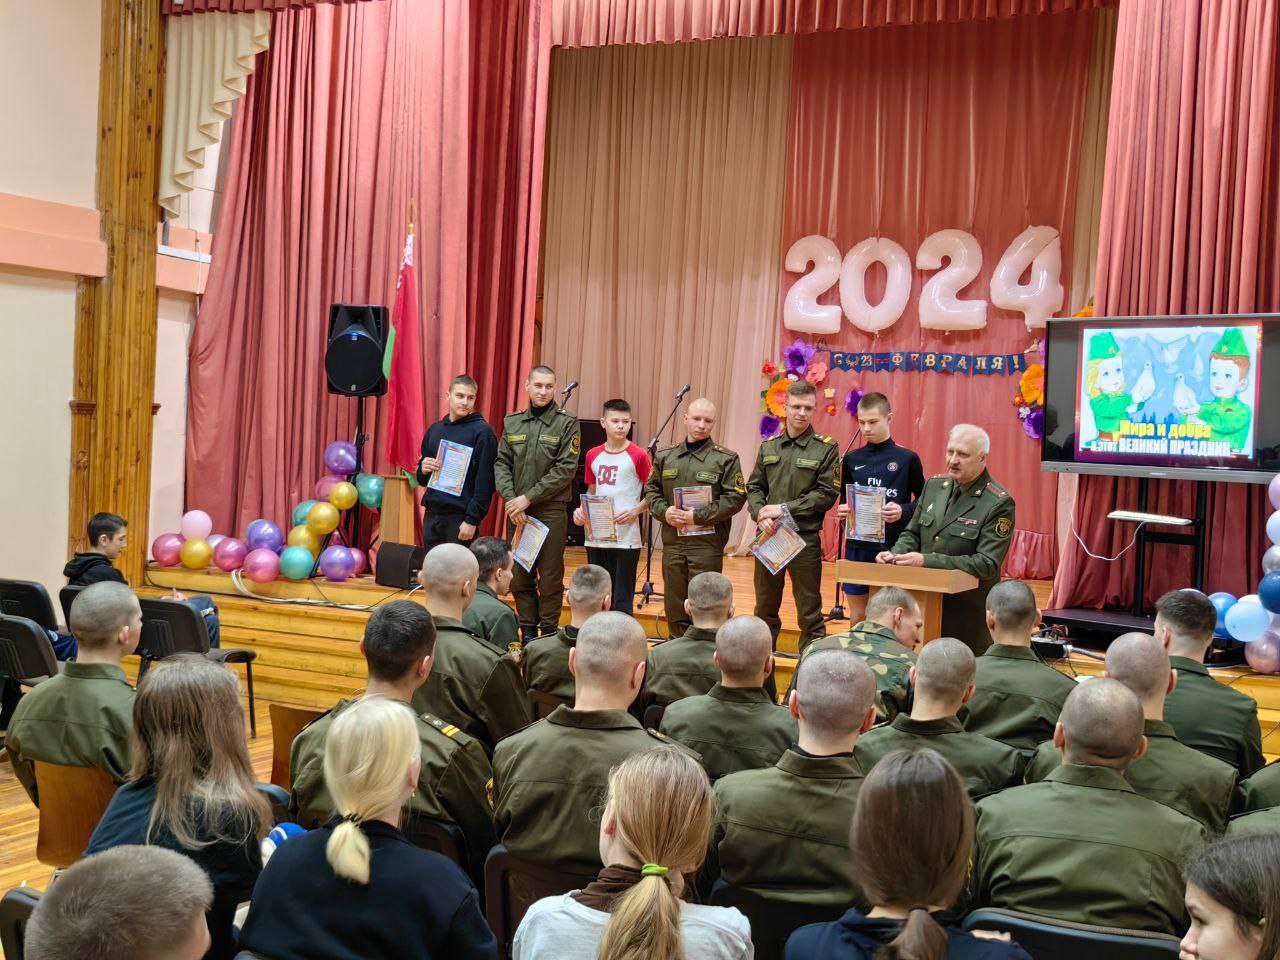 Фоторепортаж. Школьники Борисова встретились с военнослужащими в рамках спортивно-культурного мероприятия 